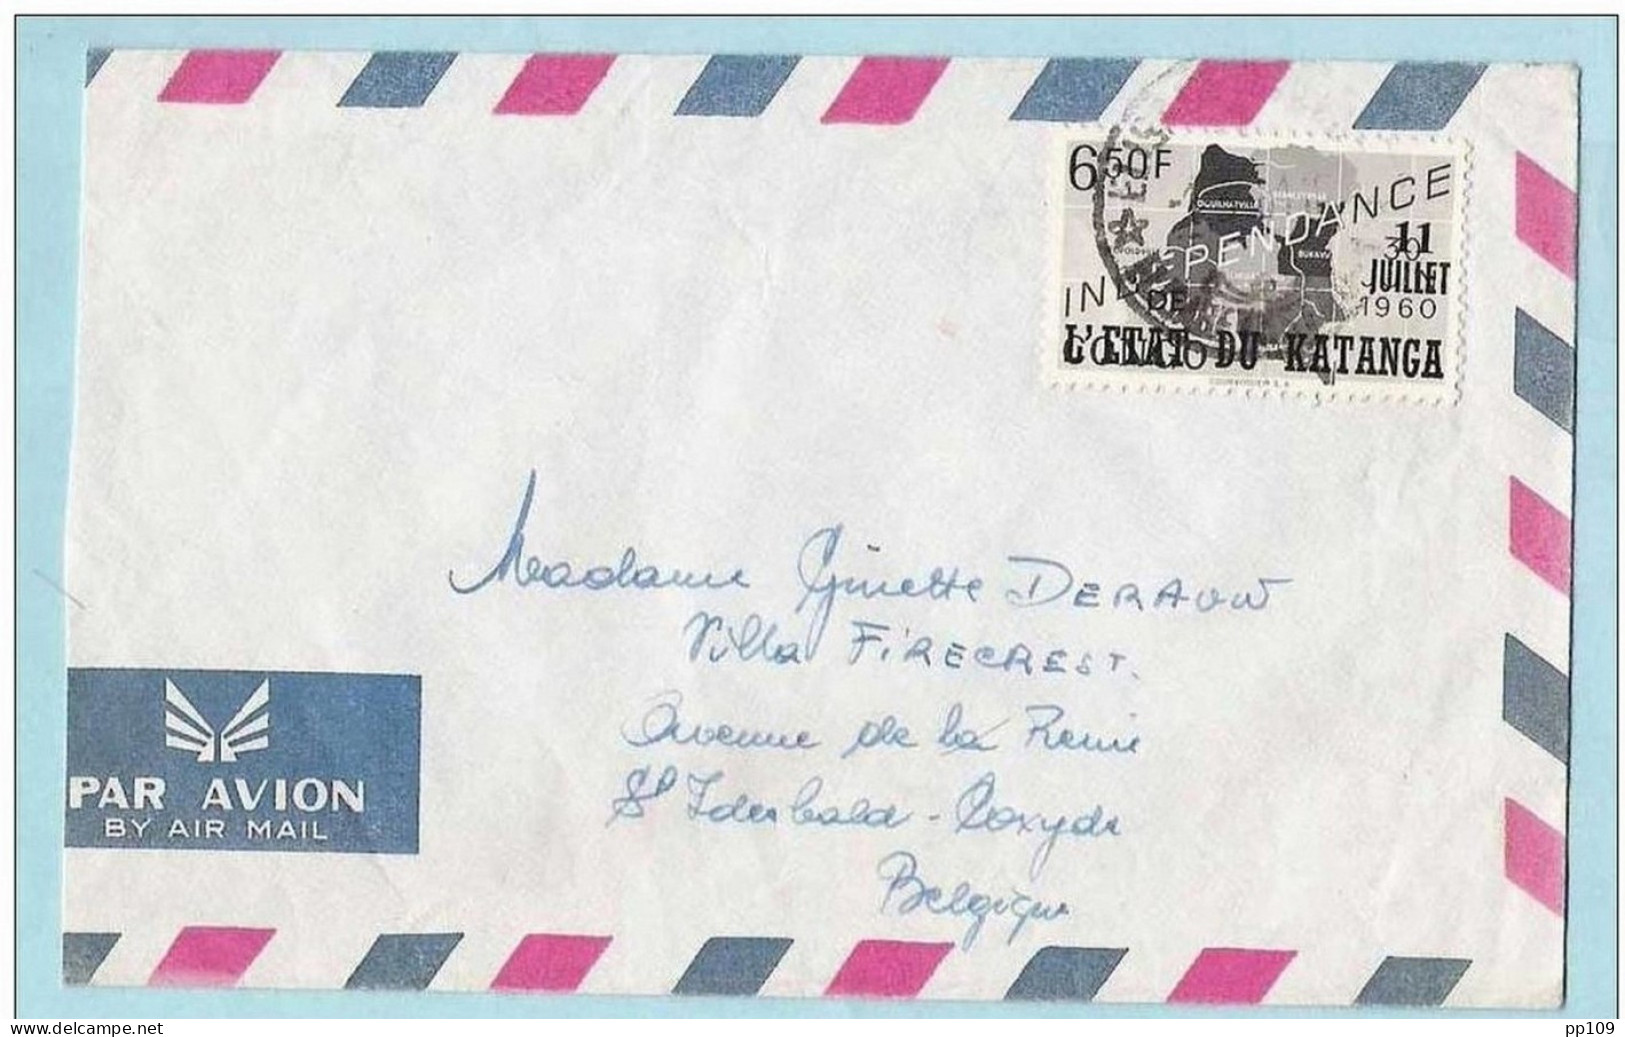 2 Lettres Par Avion By Air Mail  KATANGA  :  Le 11 Juillet 1960  Etat Du Katanga Elisabethville - Katanga